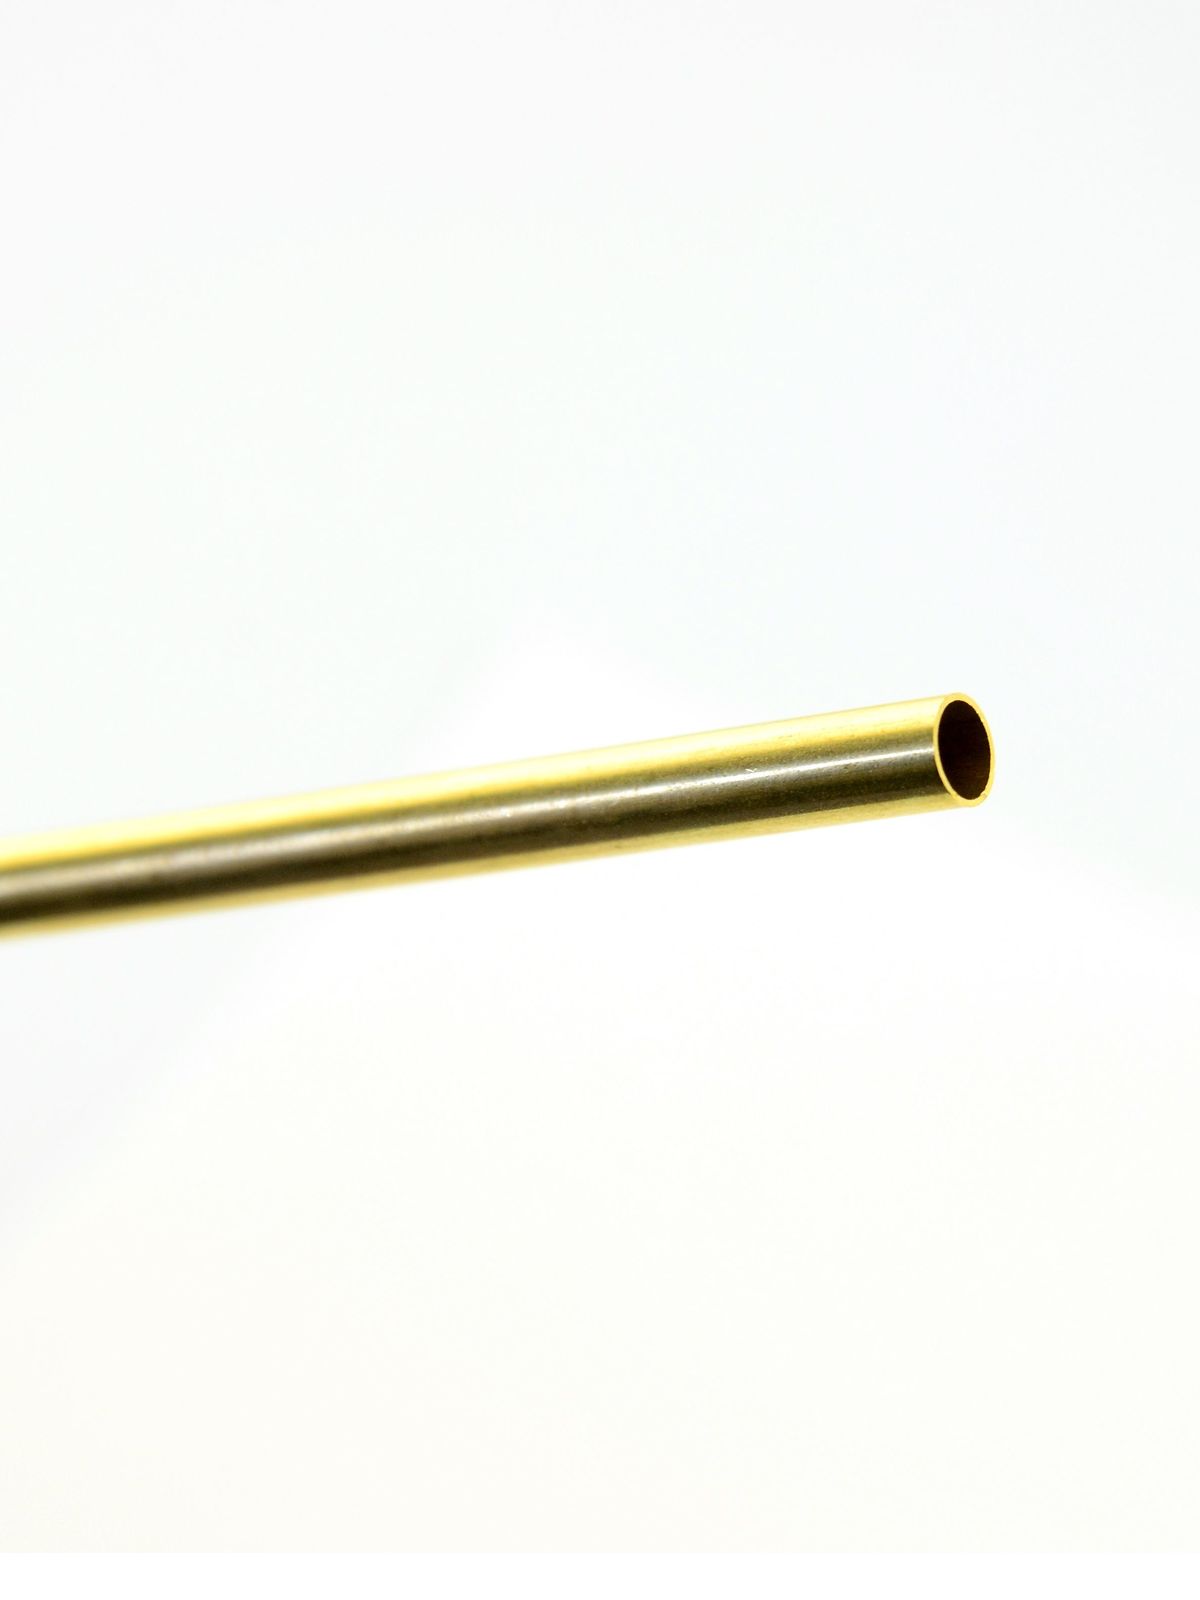 Metal Tubing Brass 1 4 In. X .014 In. X 36 In. Tubing